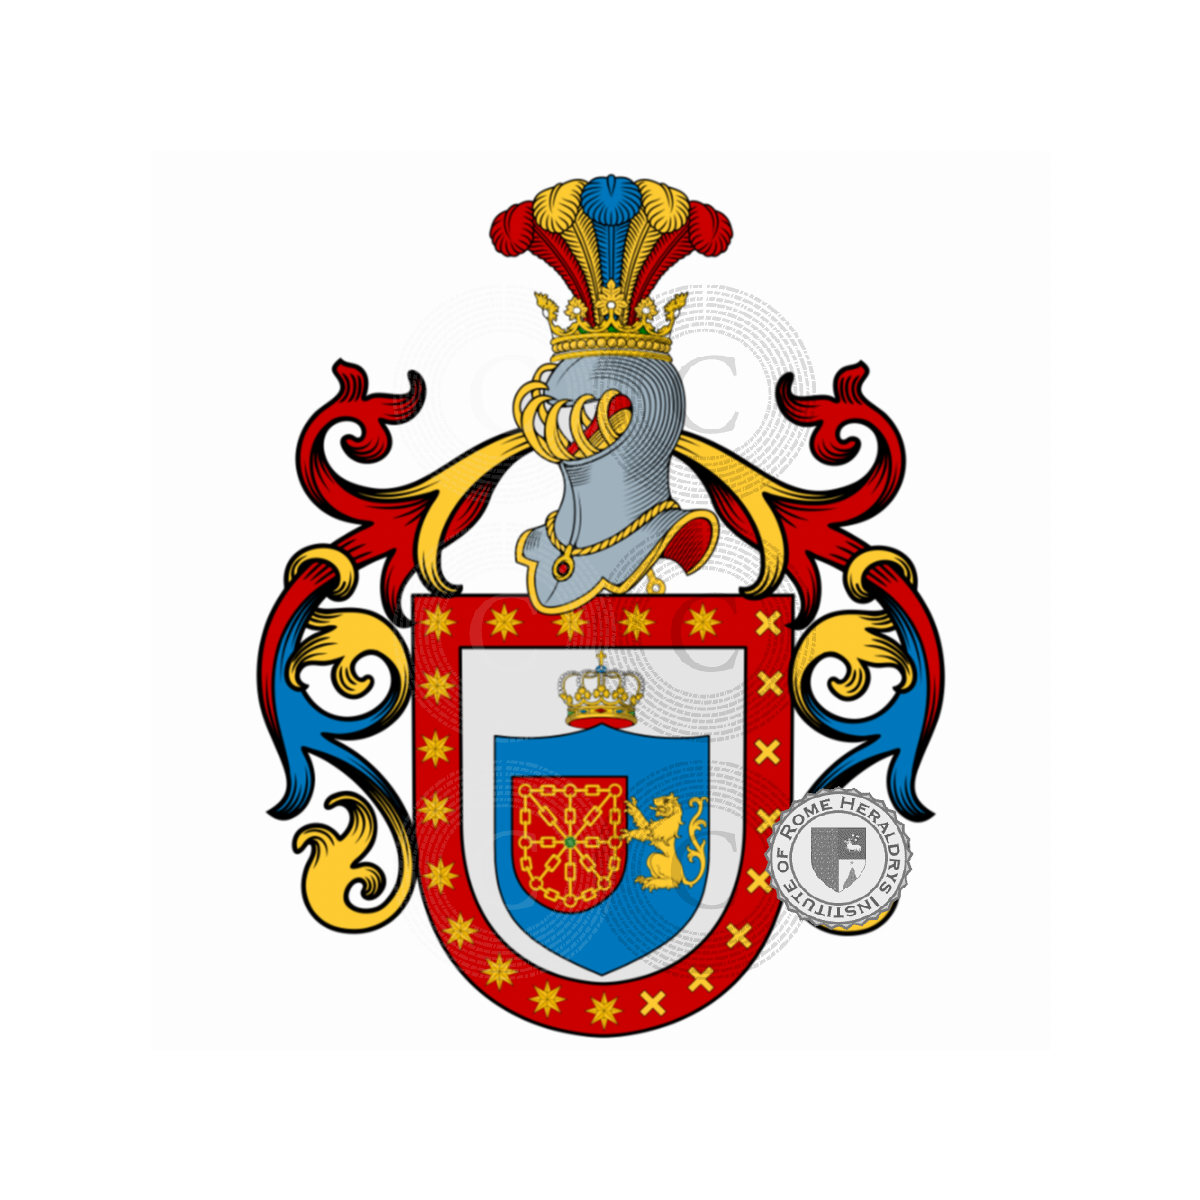 Wappen der FamilieQuadra, de la Quadra,della Quadra,Quadranti